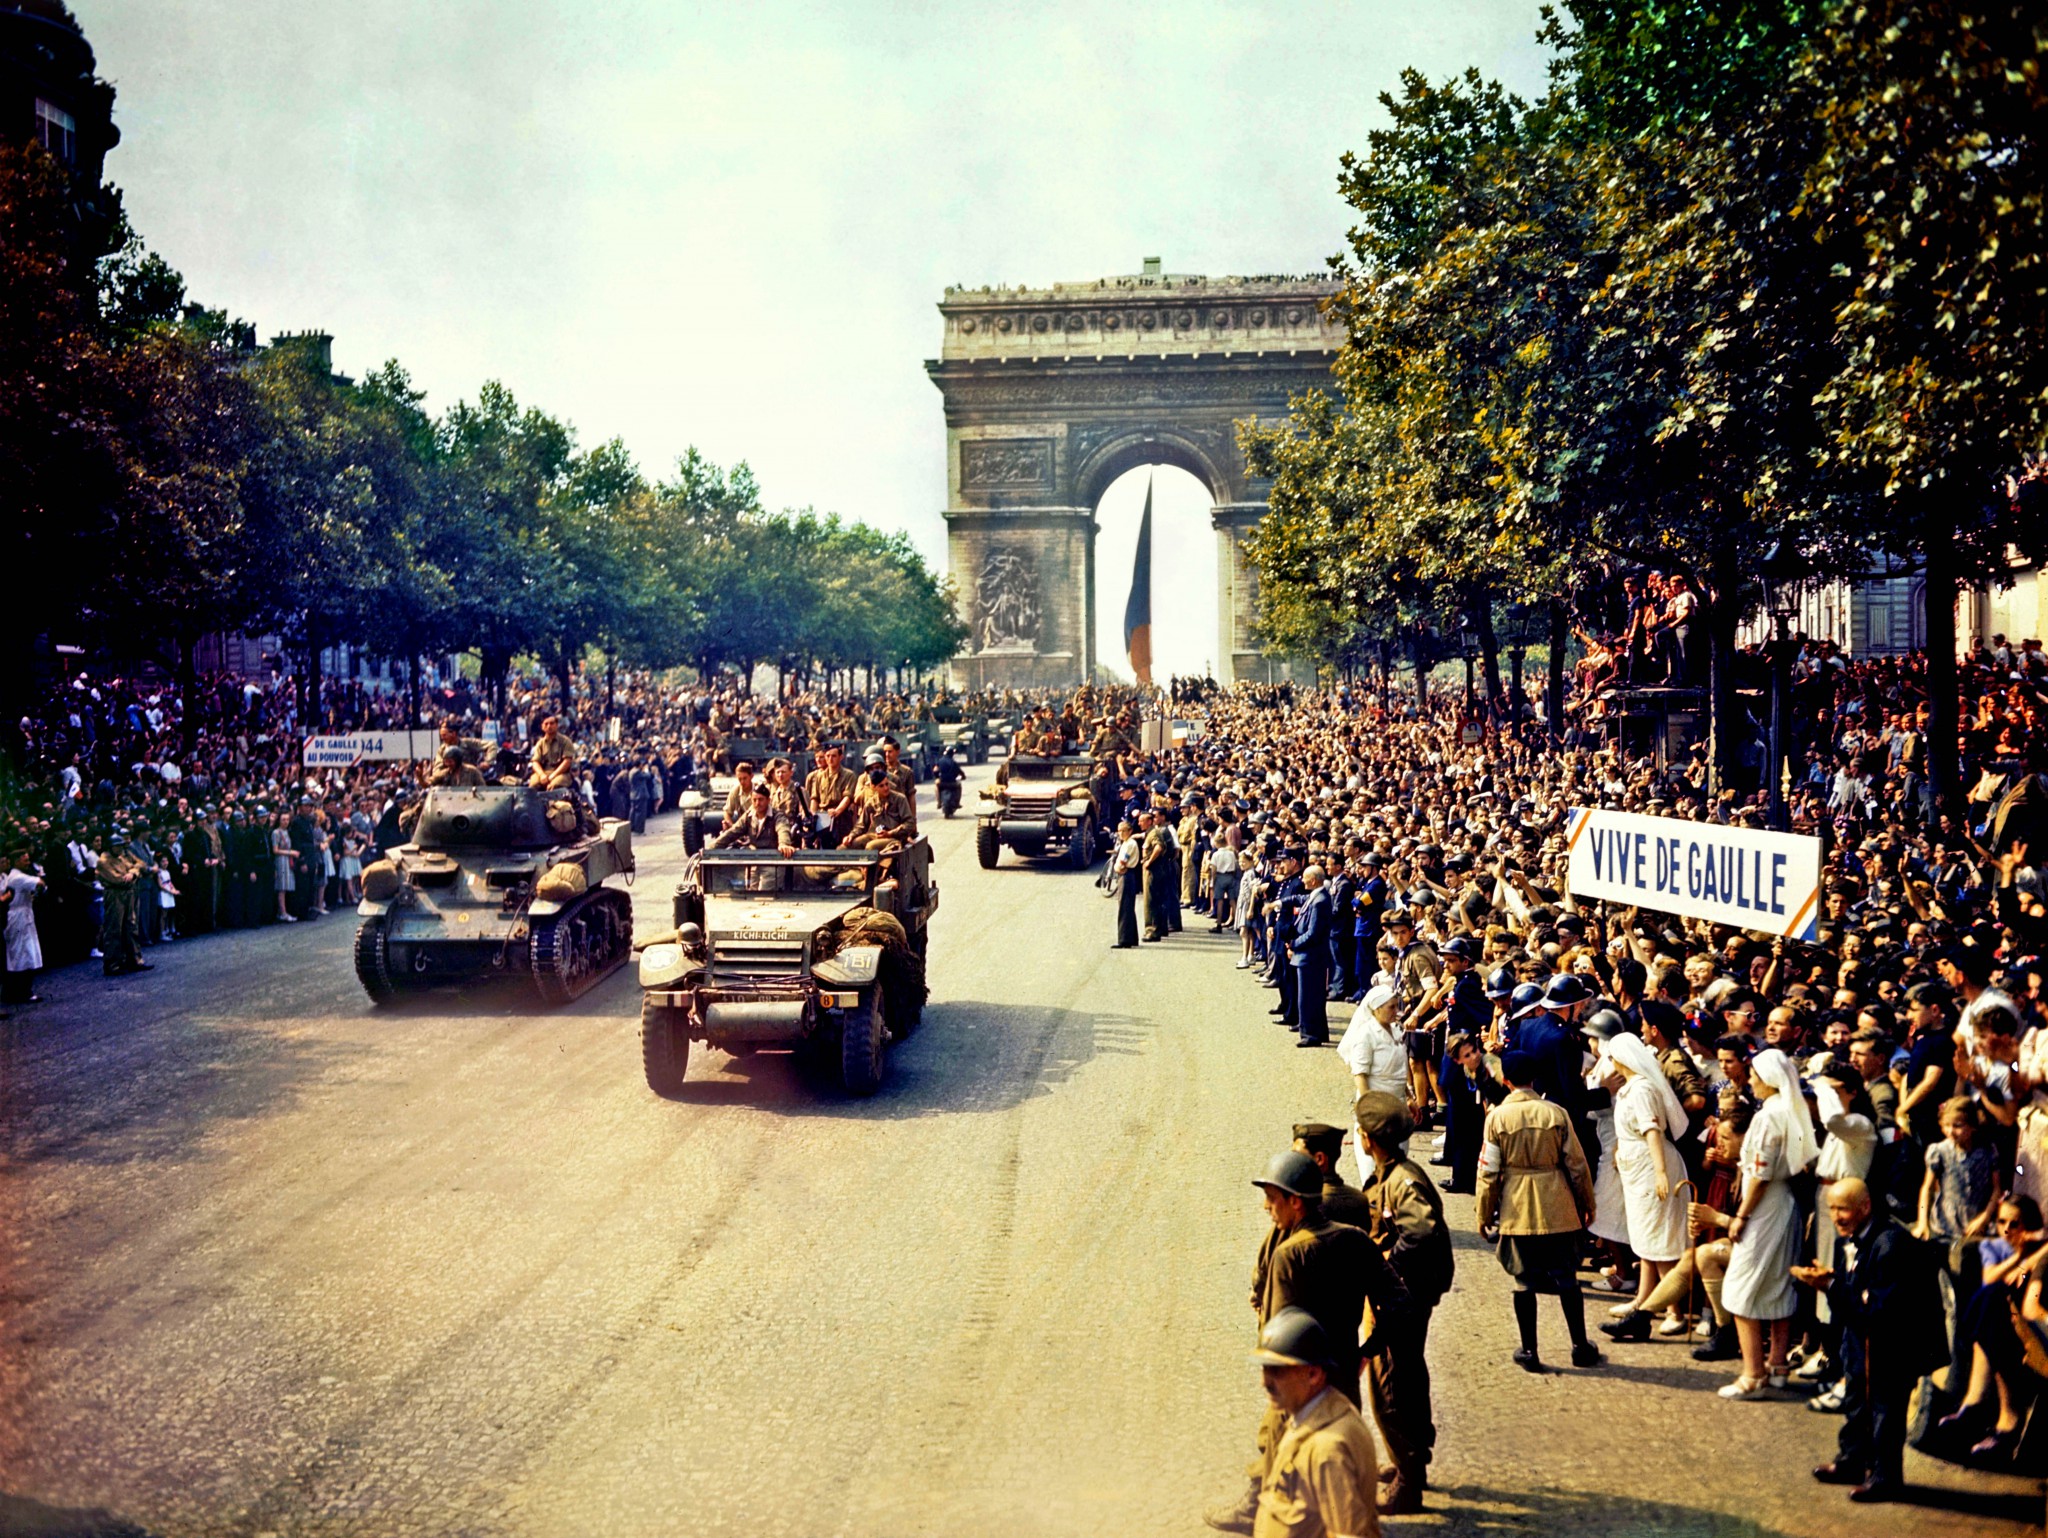 On the Champs-Élysées, 26 August 1944